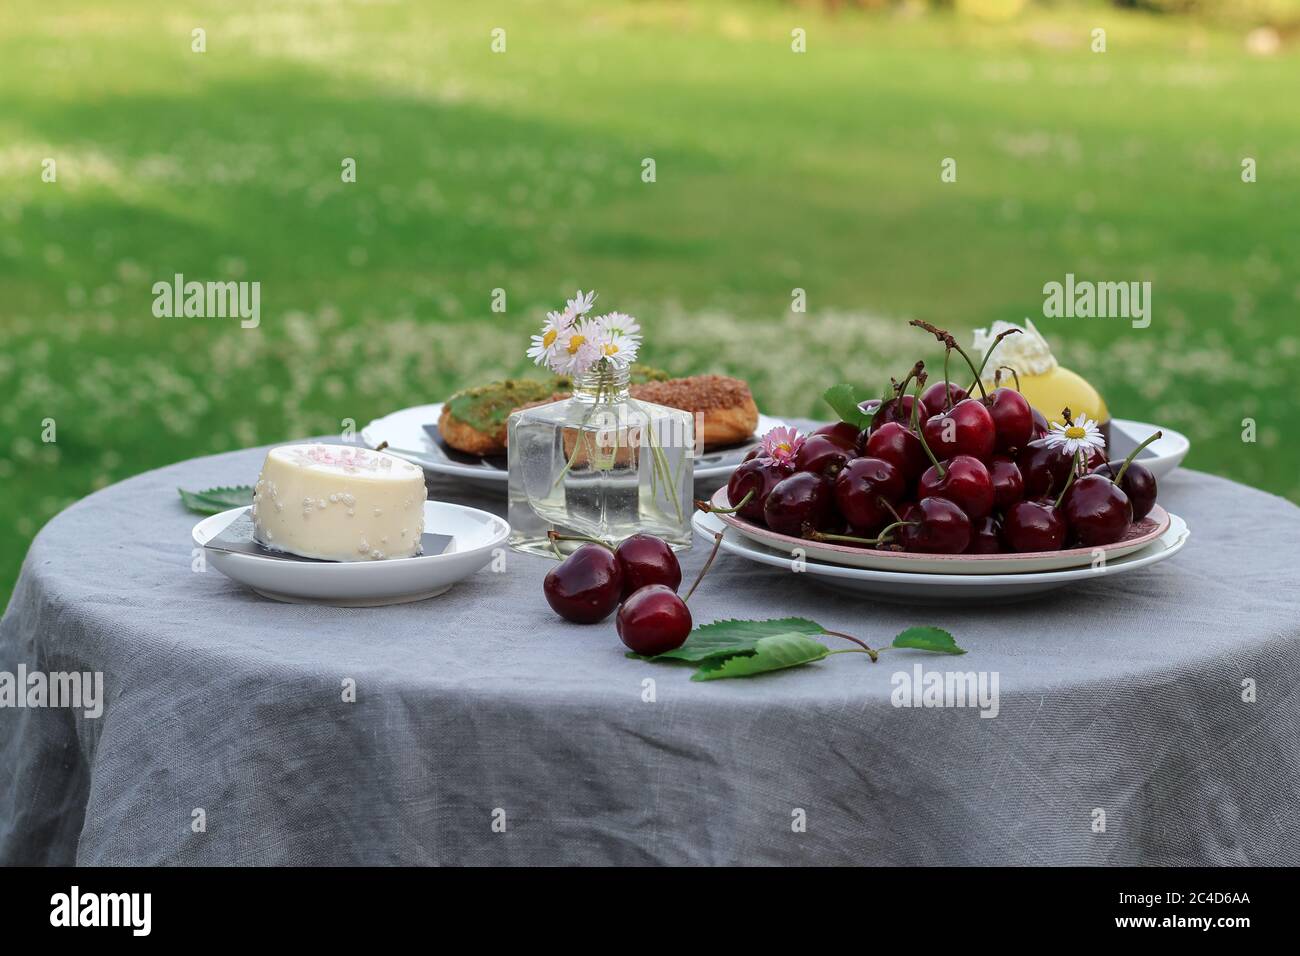 Desserttisch in einem Garten mit einer Schüssel mit süßen Kirschen und einige Sahne Desserts Stockfoto